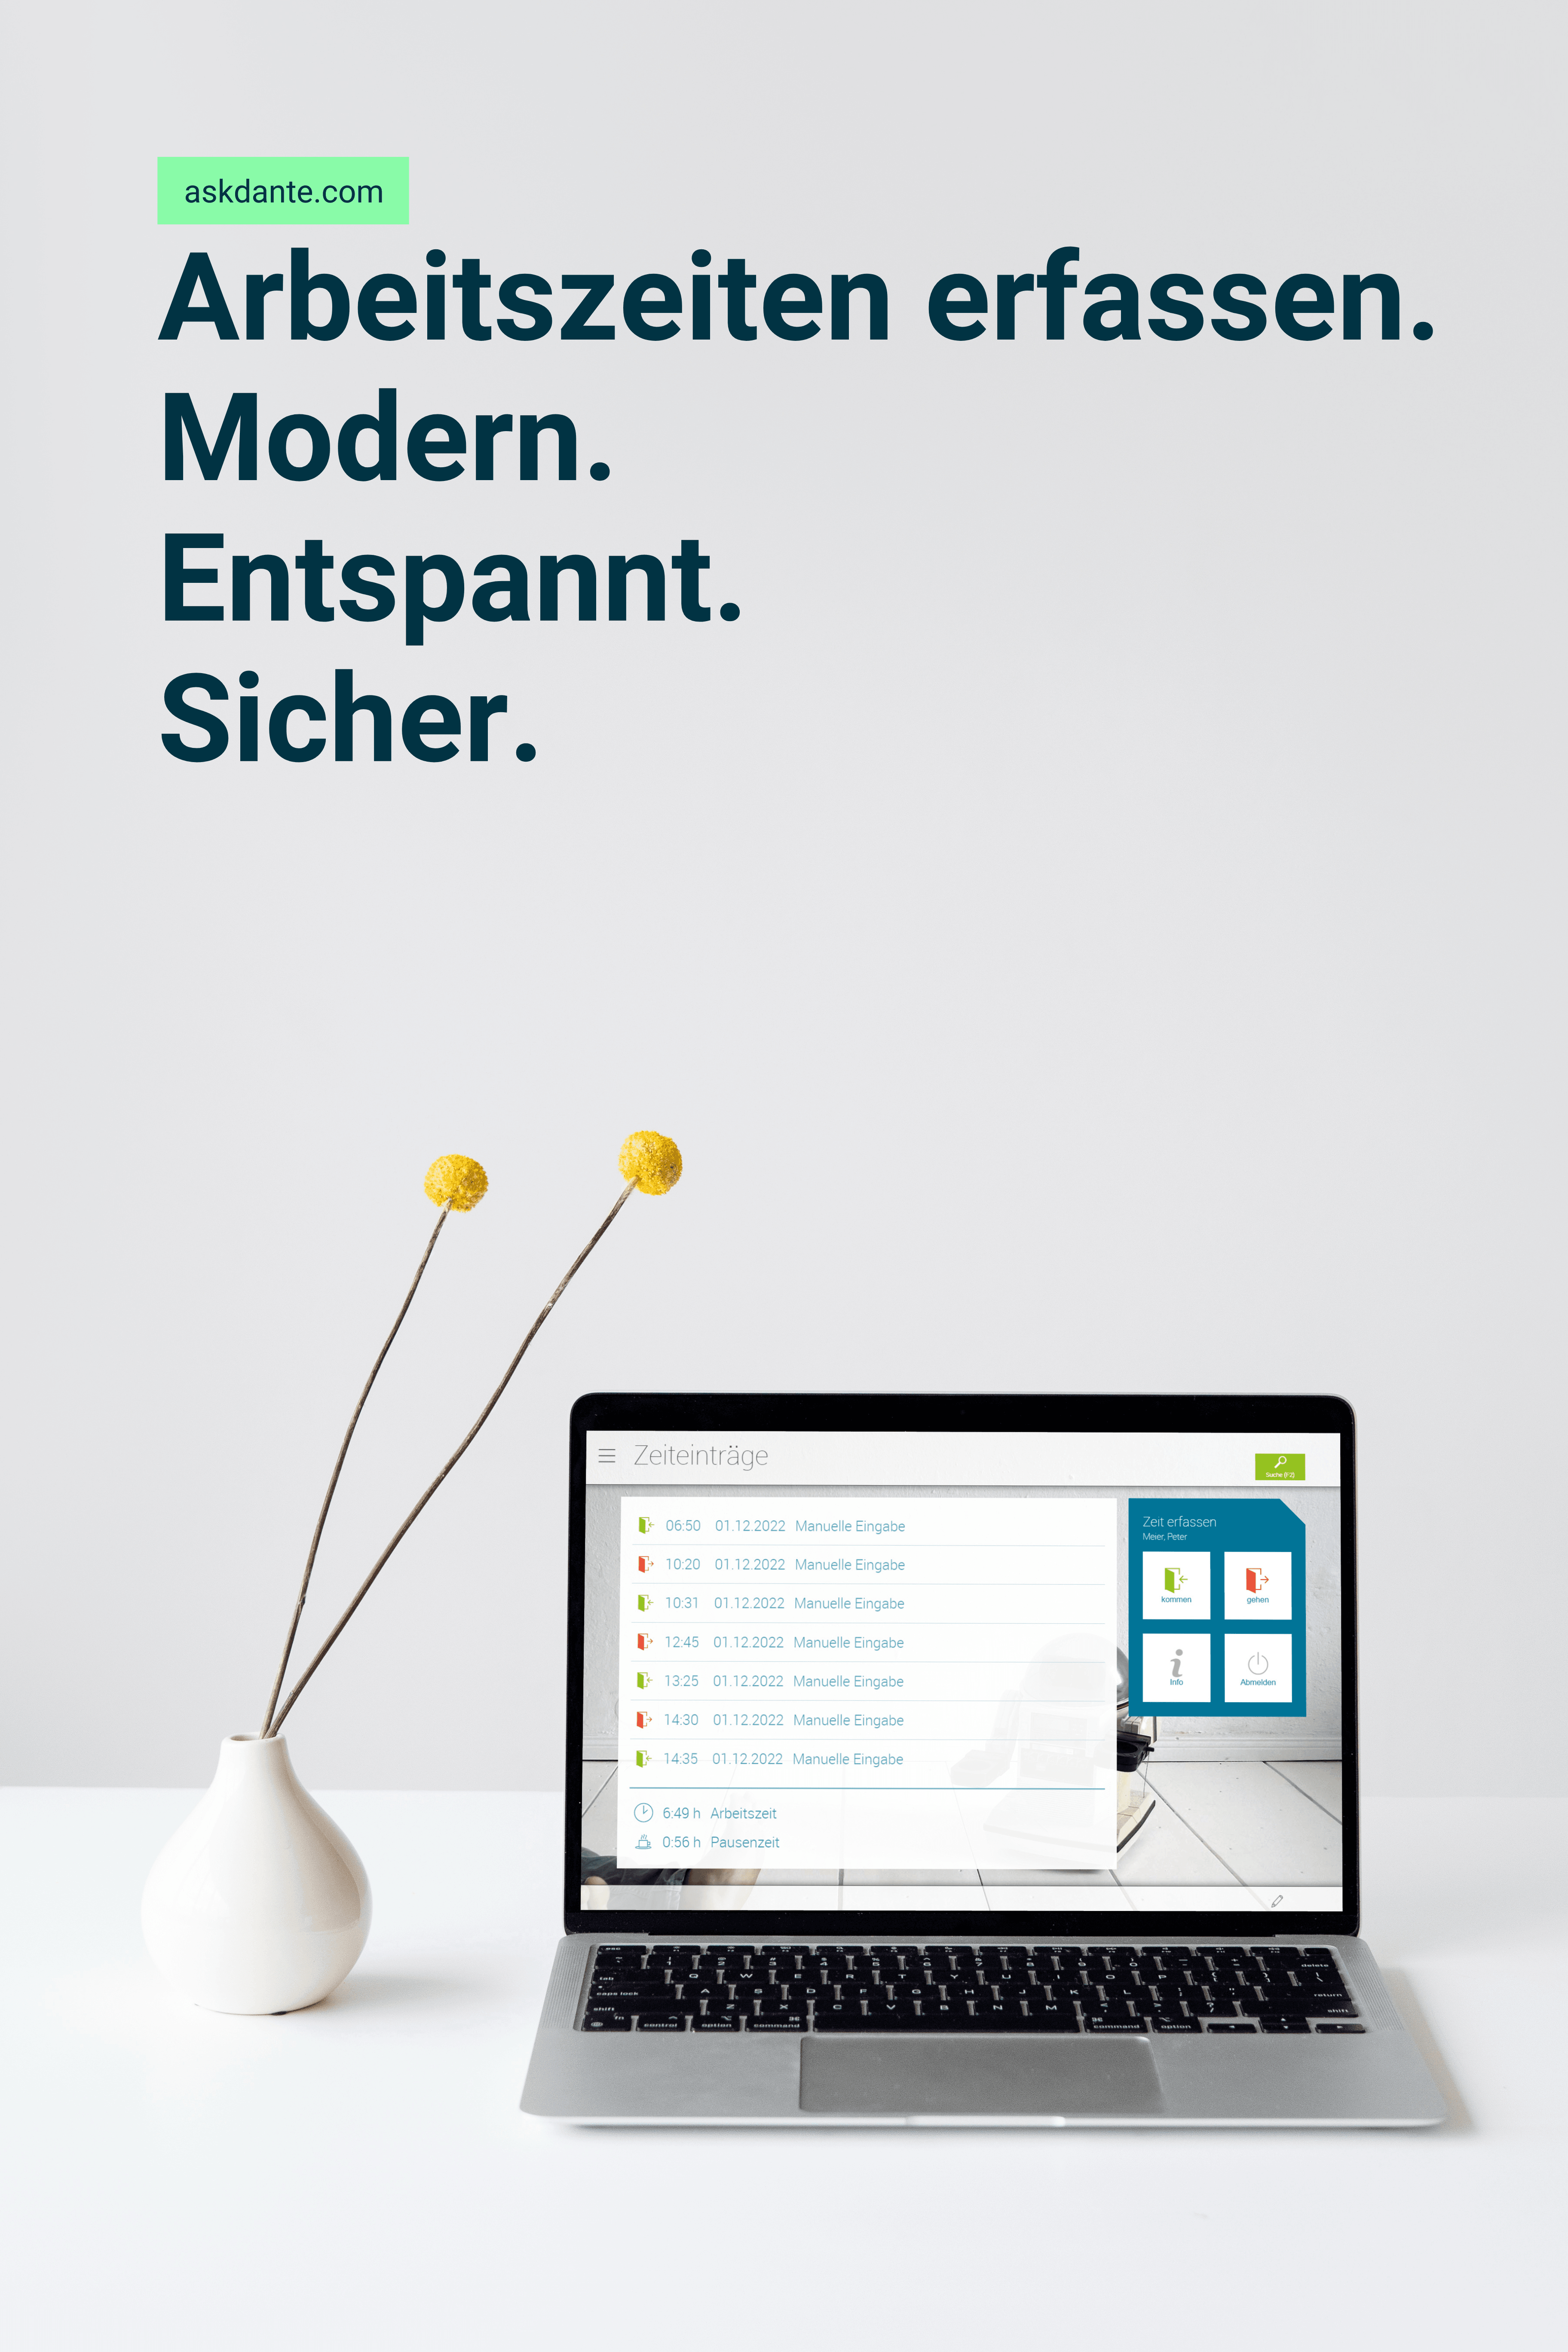 Laptop mit dem virtuellem Terminal von askDANTE und dem Claim Arbeitszeiten erfassen. Modern. Entspannt. Sicher. Im Hintergrund sind zwei gelbe Blumen in der Vase.